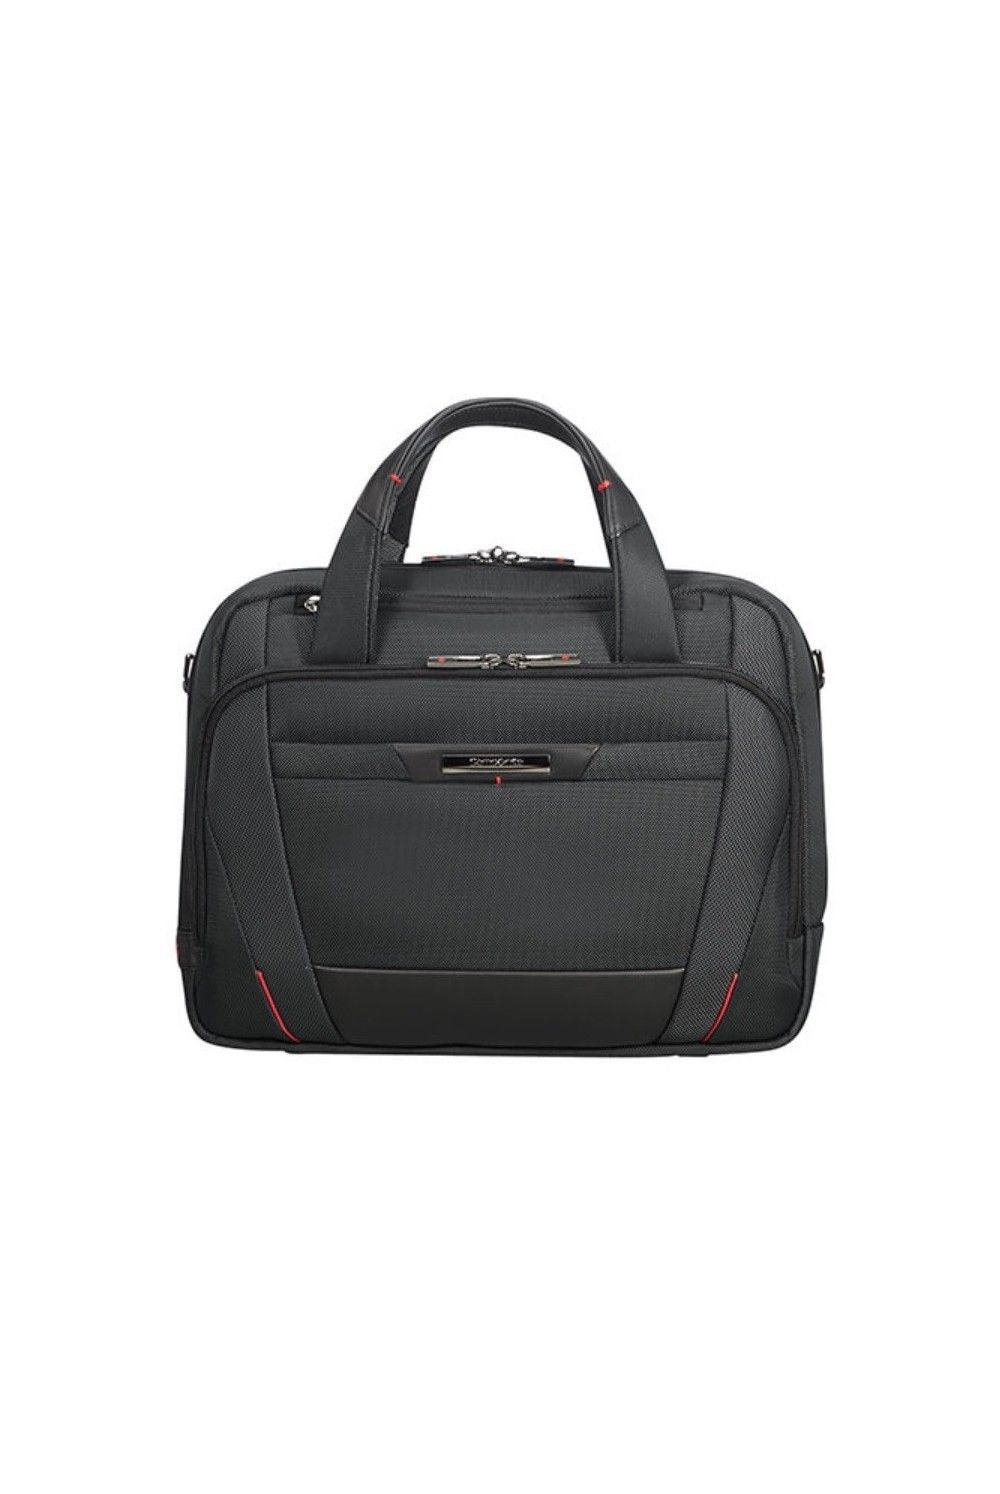 Samsonite Briefcase Pro DLX 5 14.1 inch 8.5 liter black